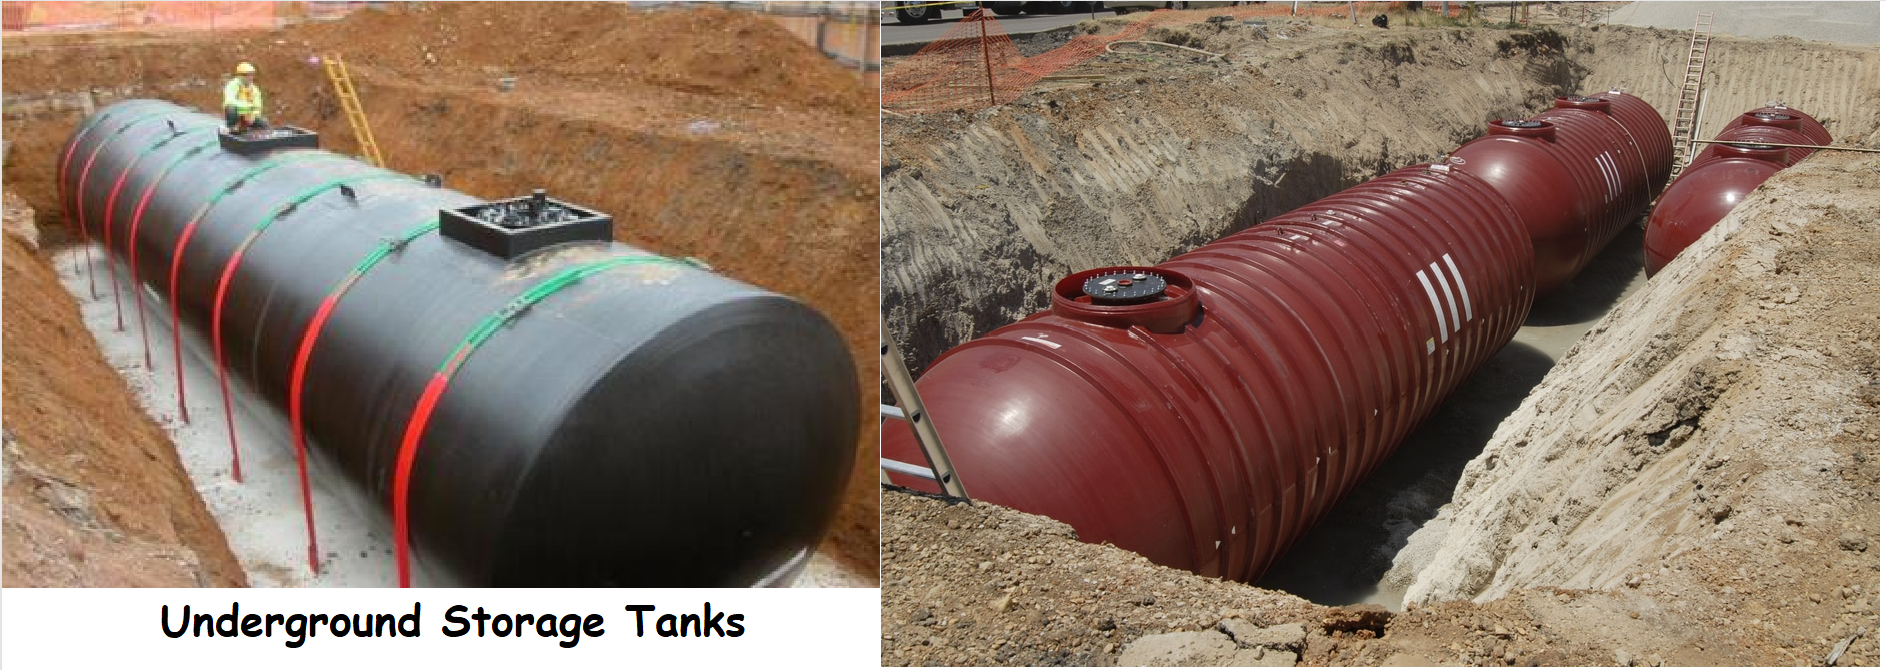 Underground storage tanks (UST)